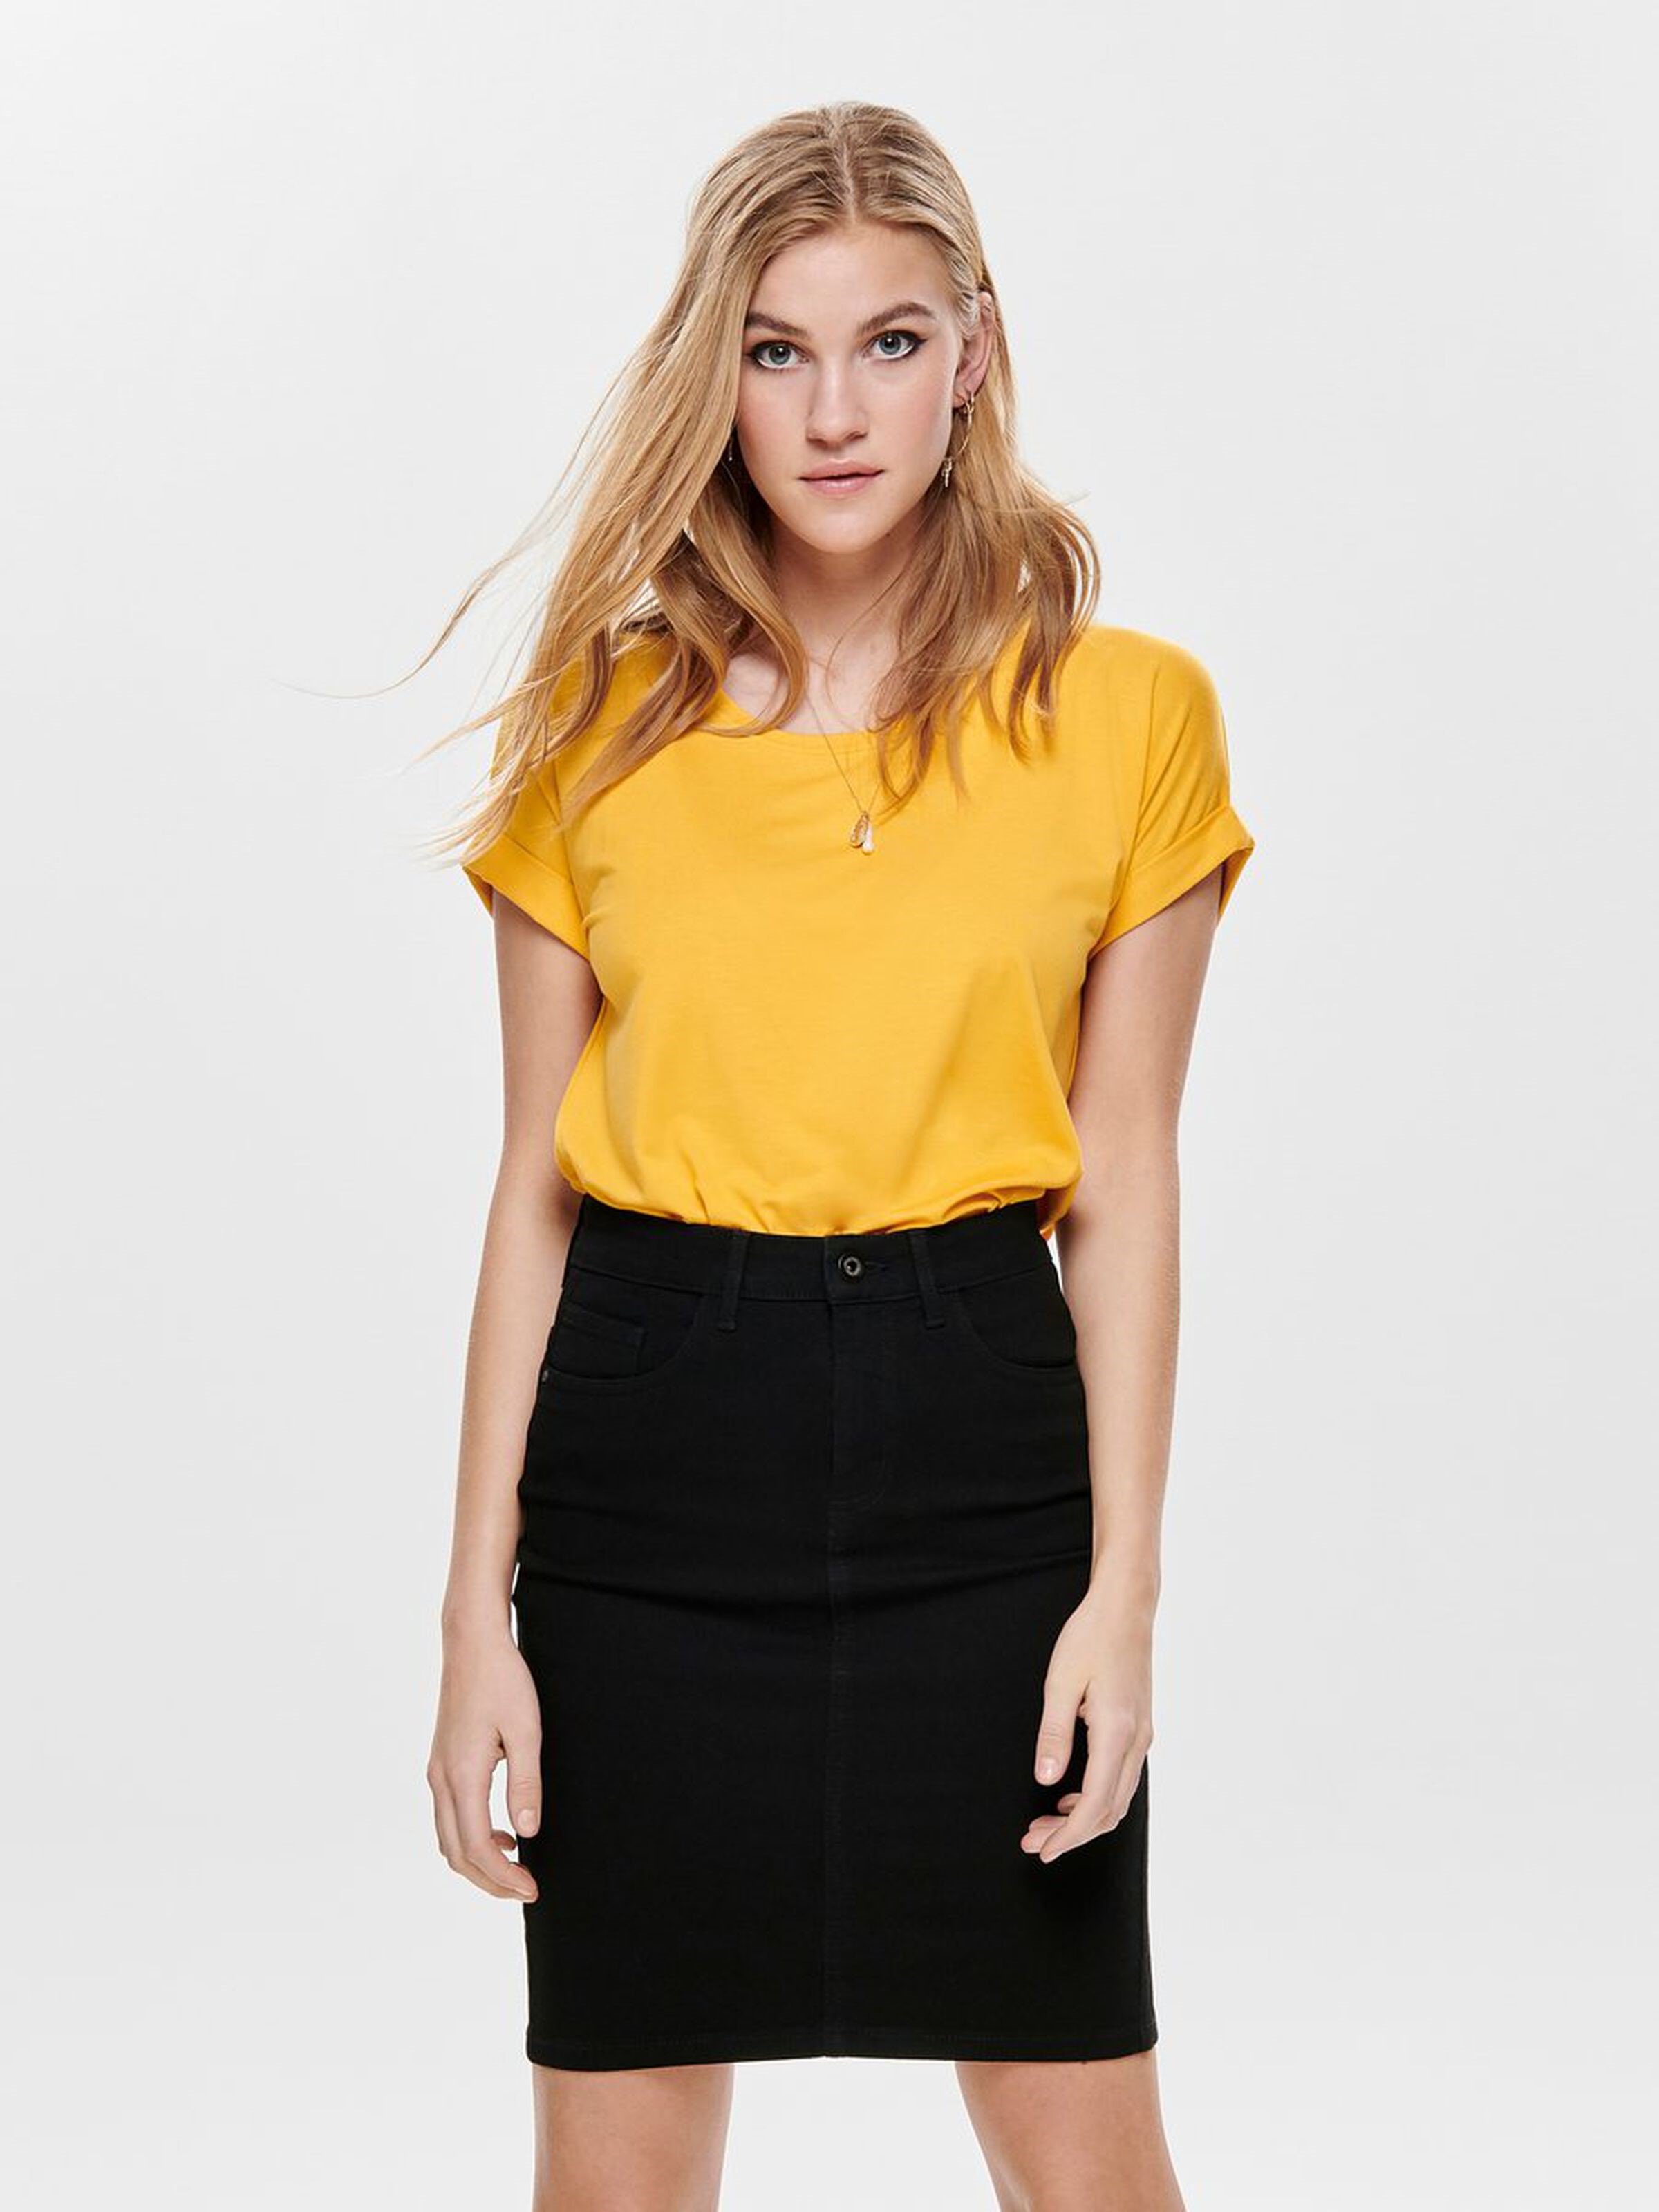 Only Kadın T-Shirt 15106662 Yolk Yellow